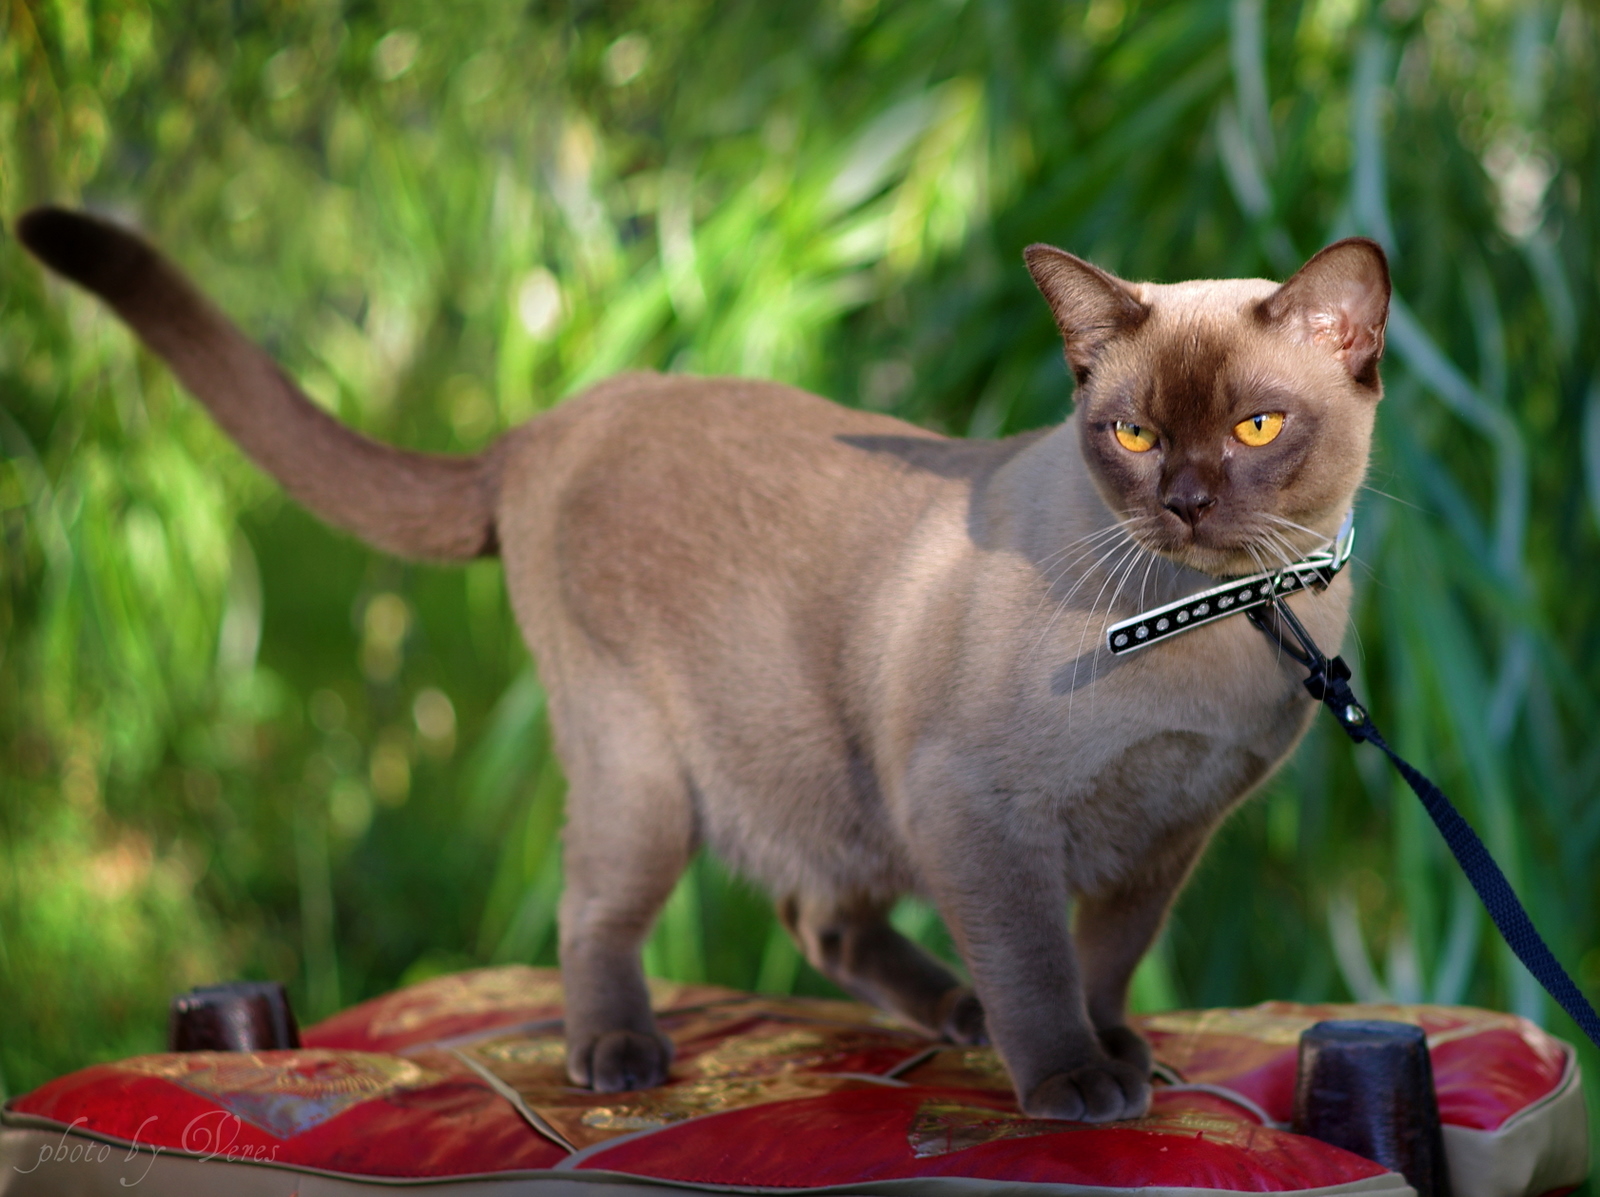 Всё, что вы хотели знать о бурманской кошке